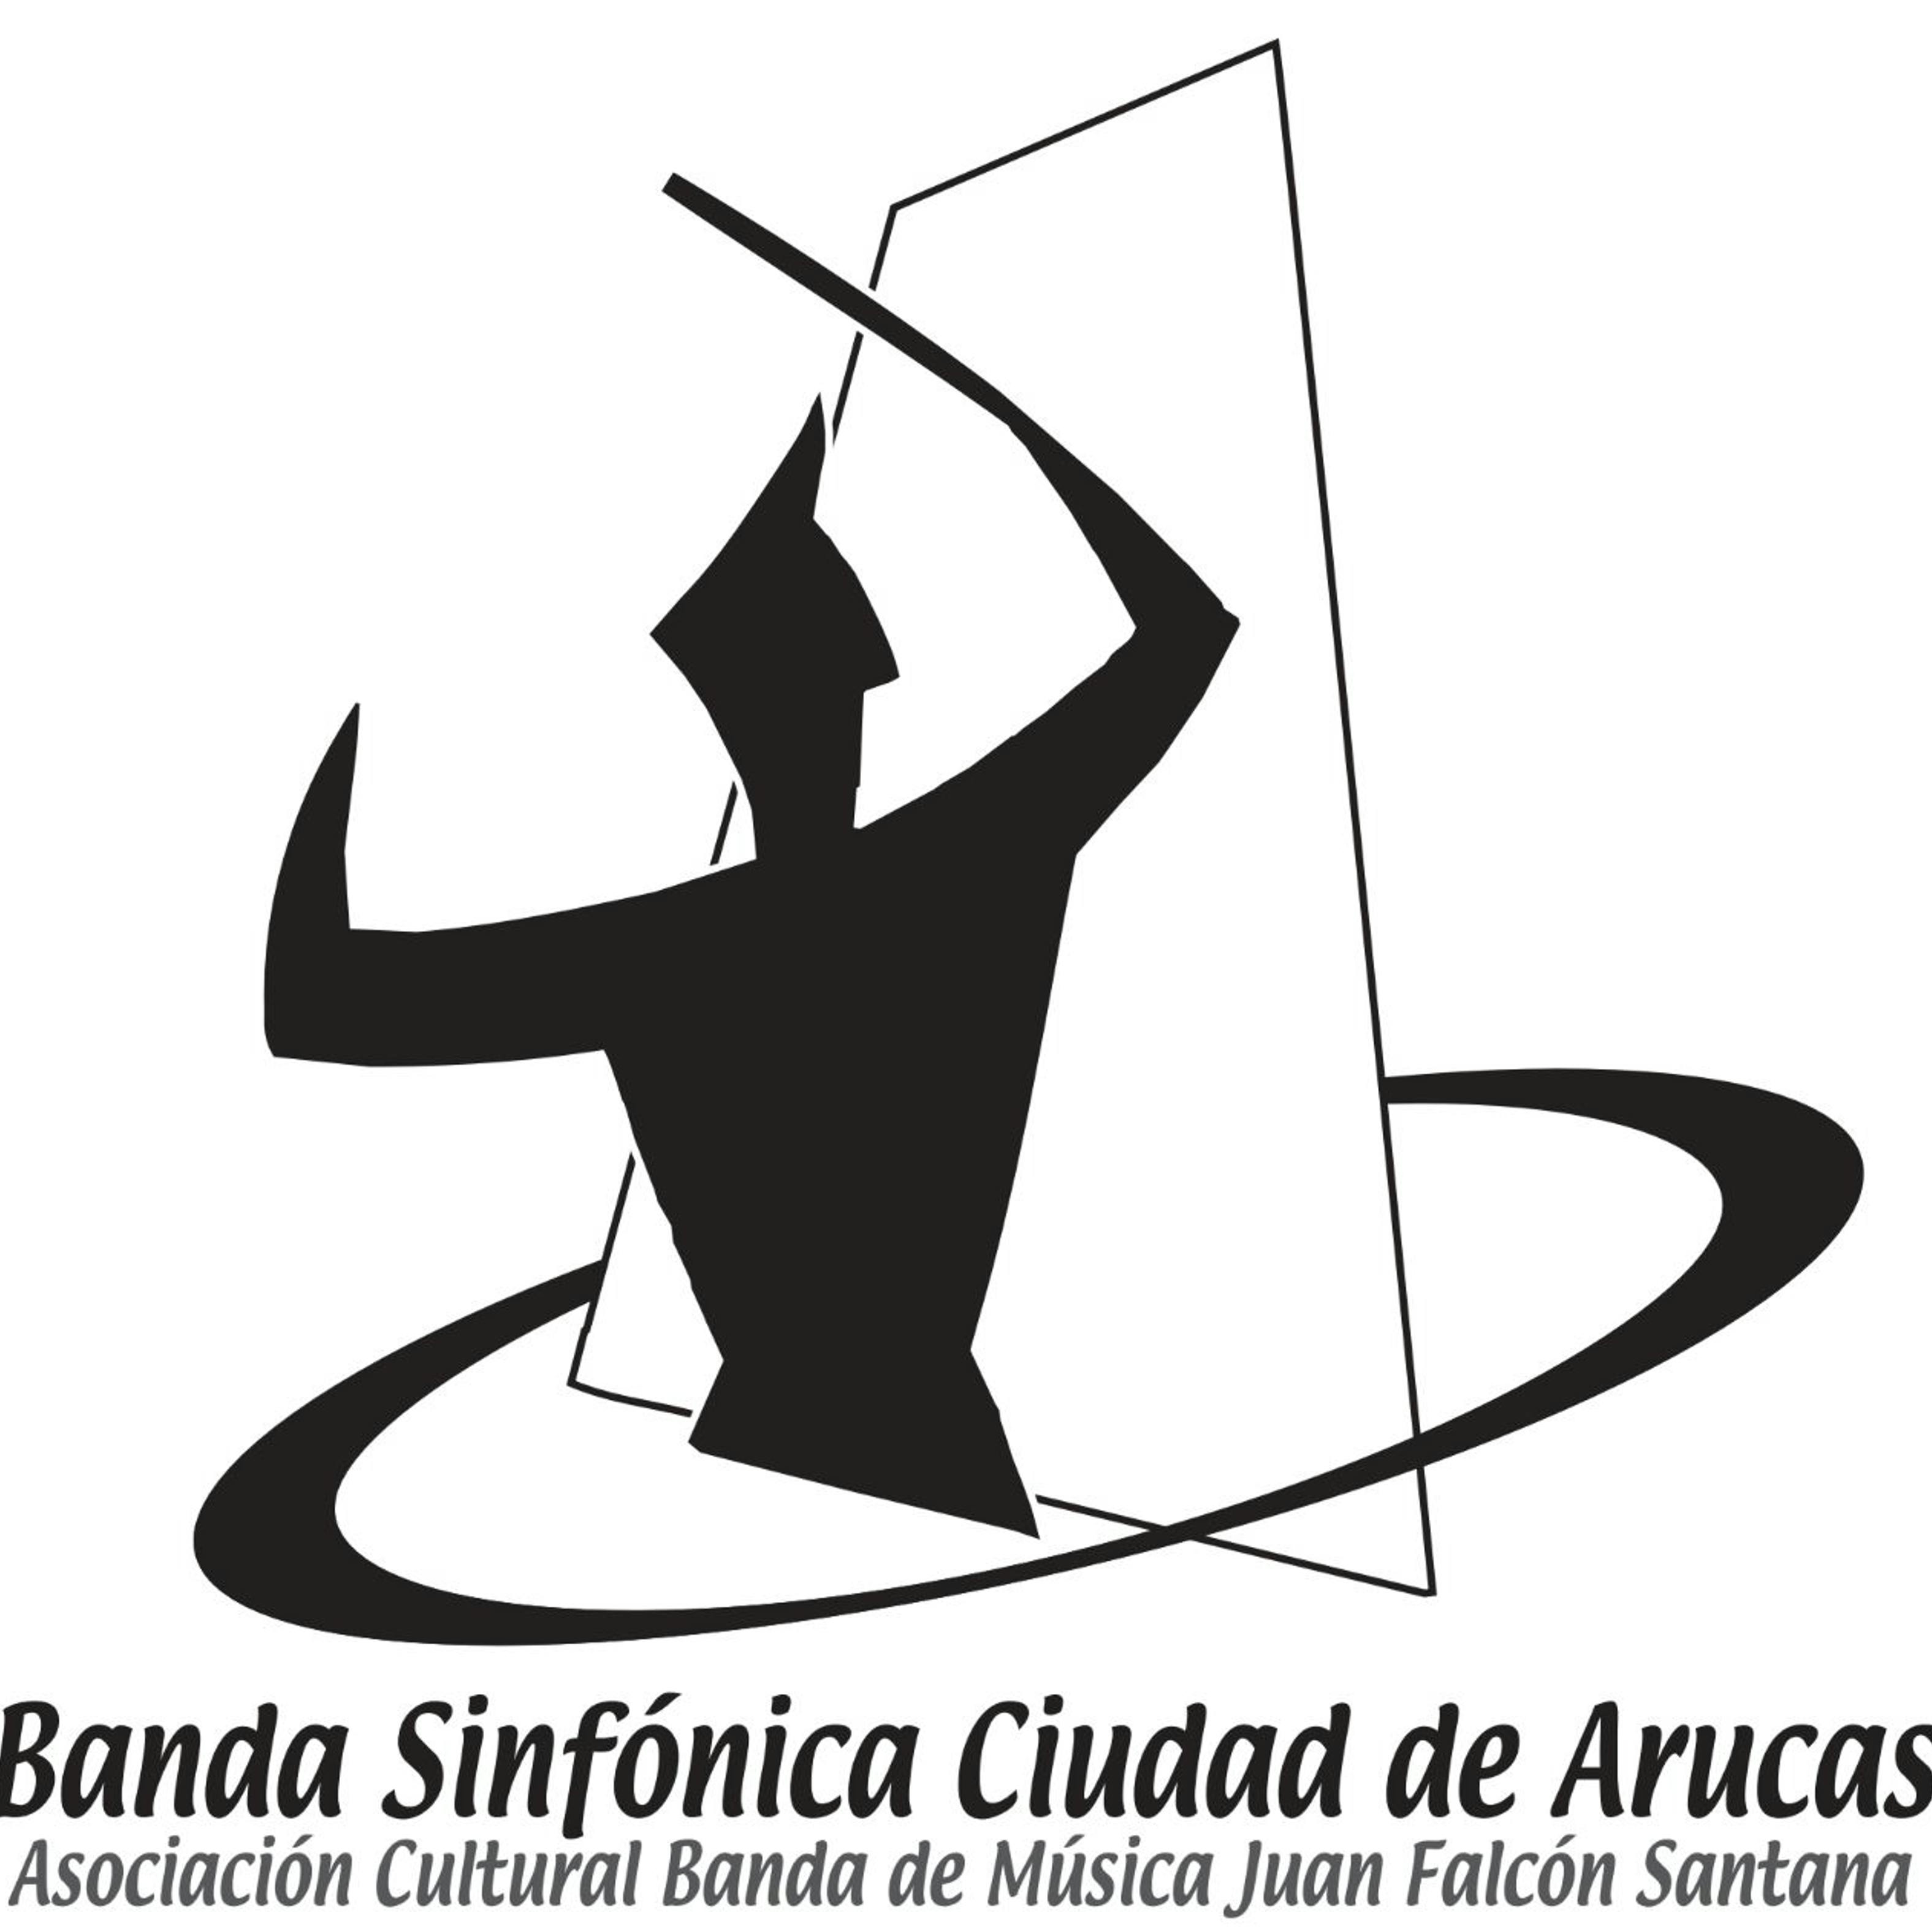 BANDA SINFONICA CIUDAD DE ARUCAS